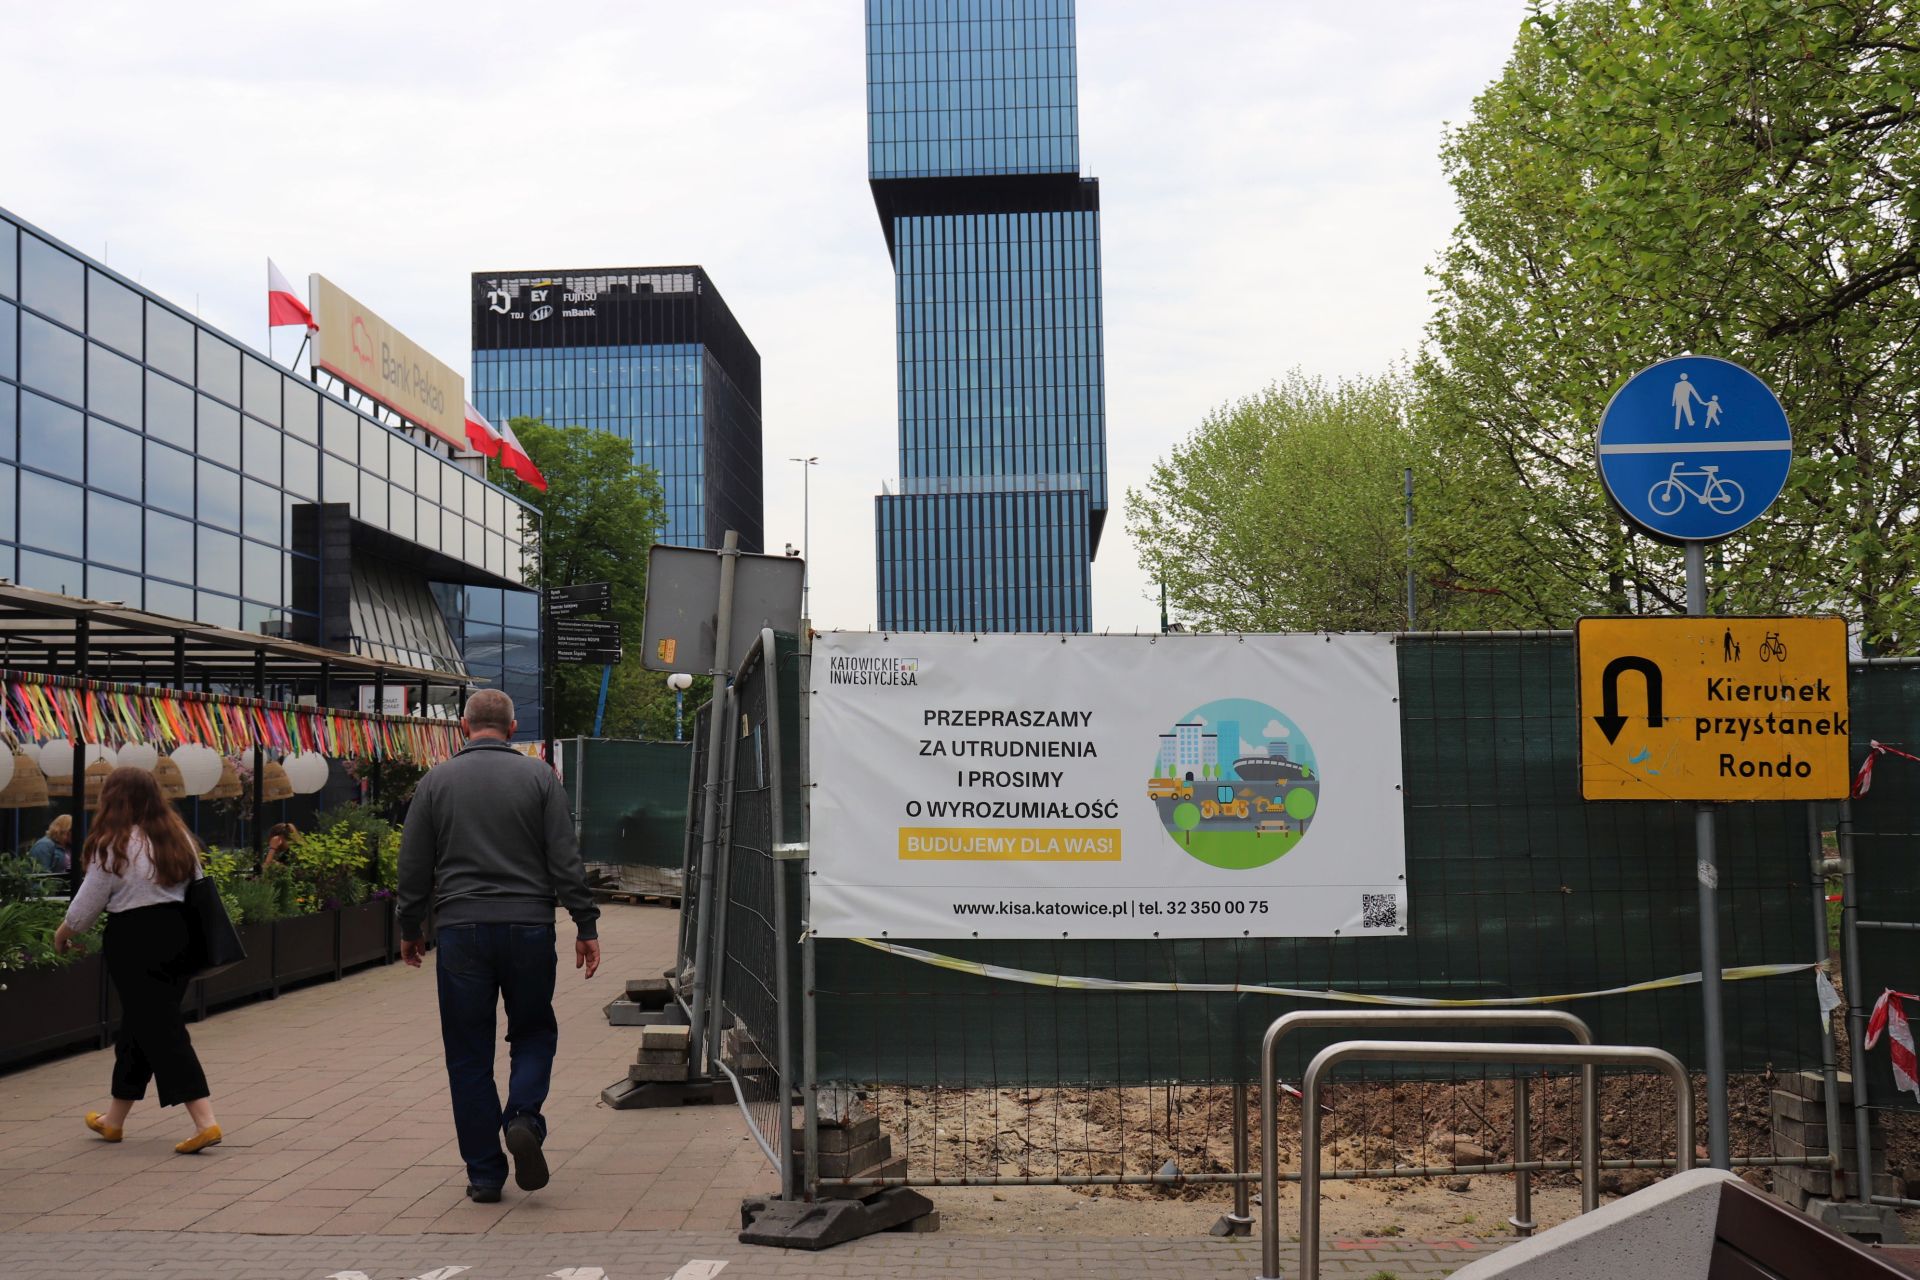 Ochrona drzew jednym z powodów przesunięcia terminu zakończenia budowy ciągu pieszo-rowerowego w rejonie ronda Ziętka